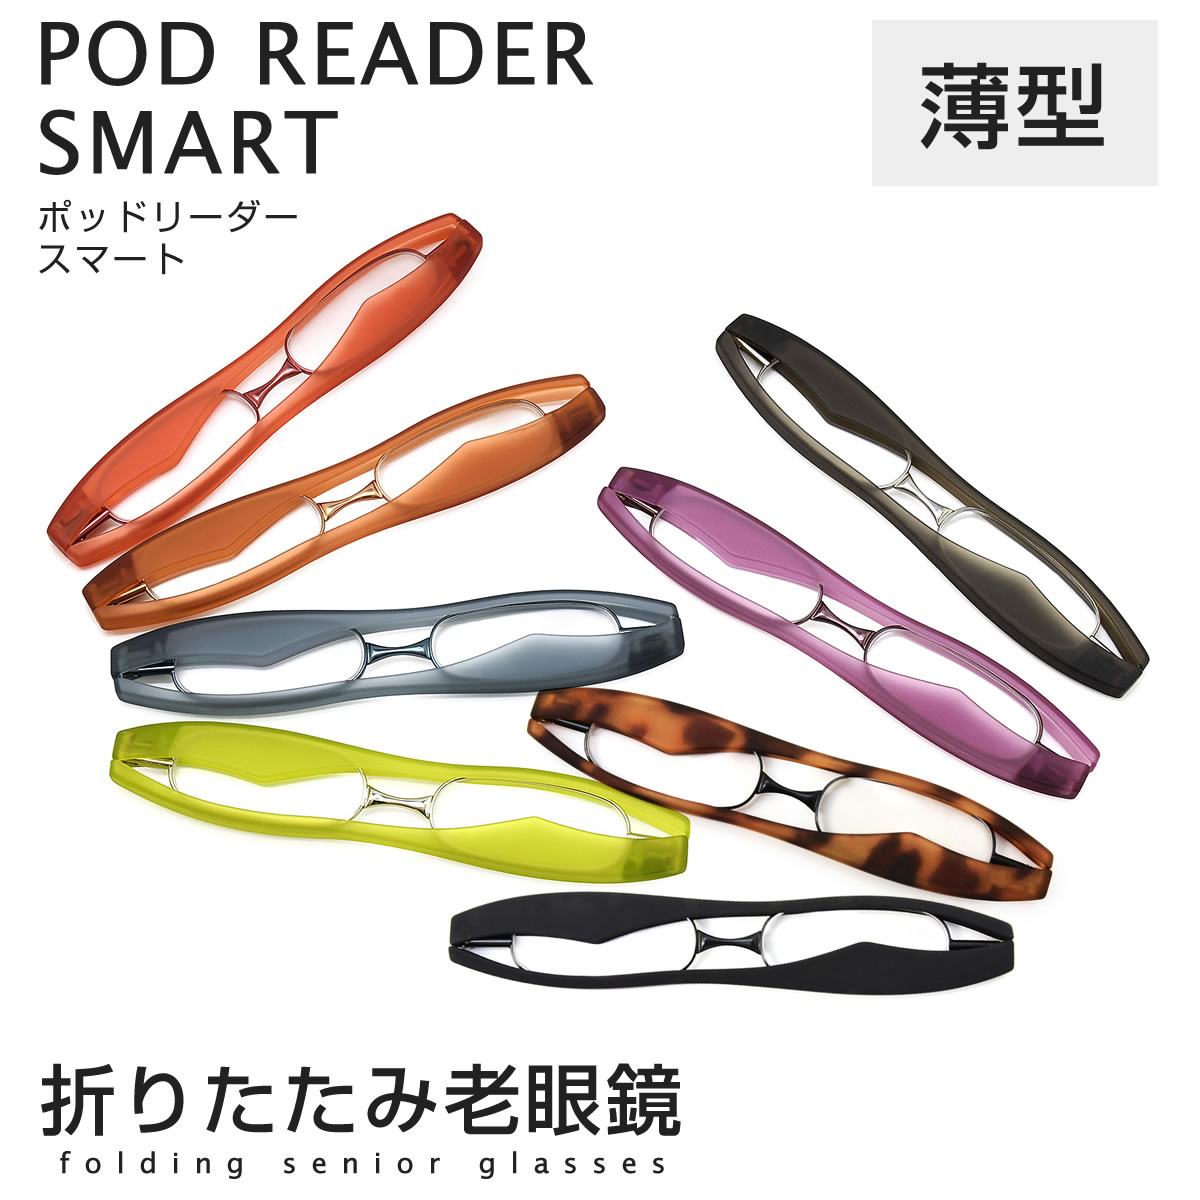 日本进口超轻便携可折叠老花镜高清眼镜多色男女兼用迷你老眼镜